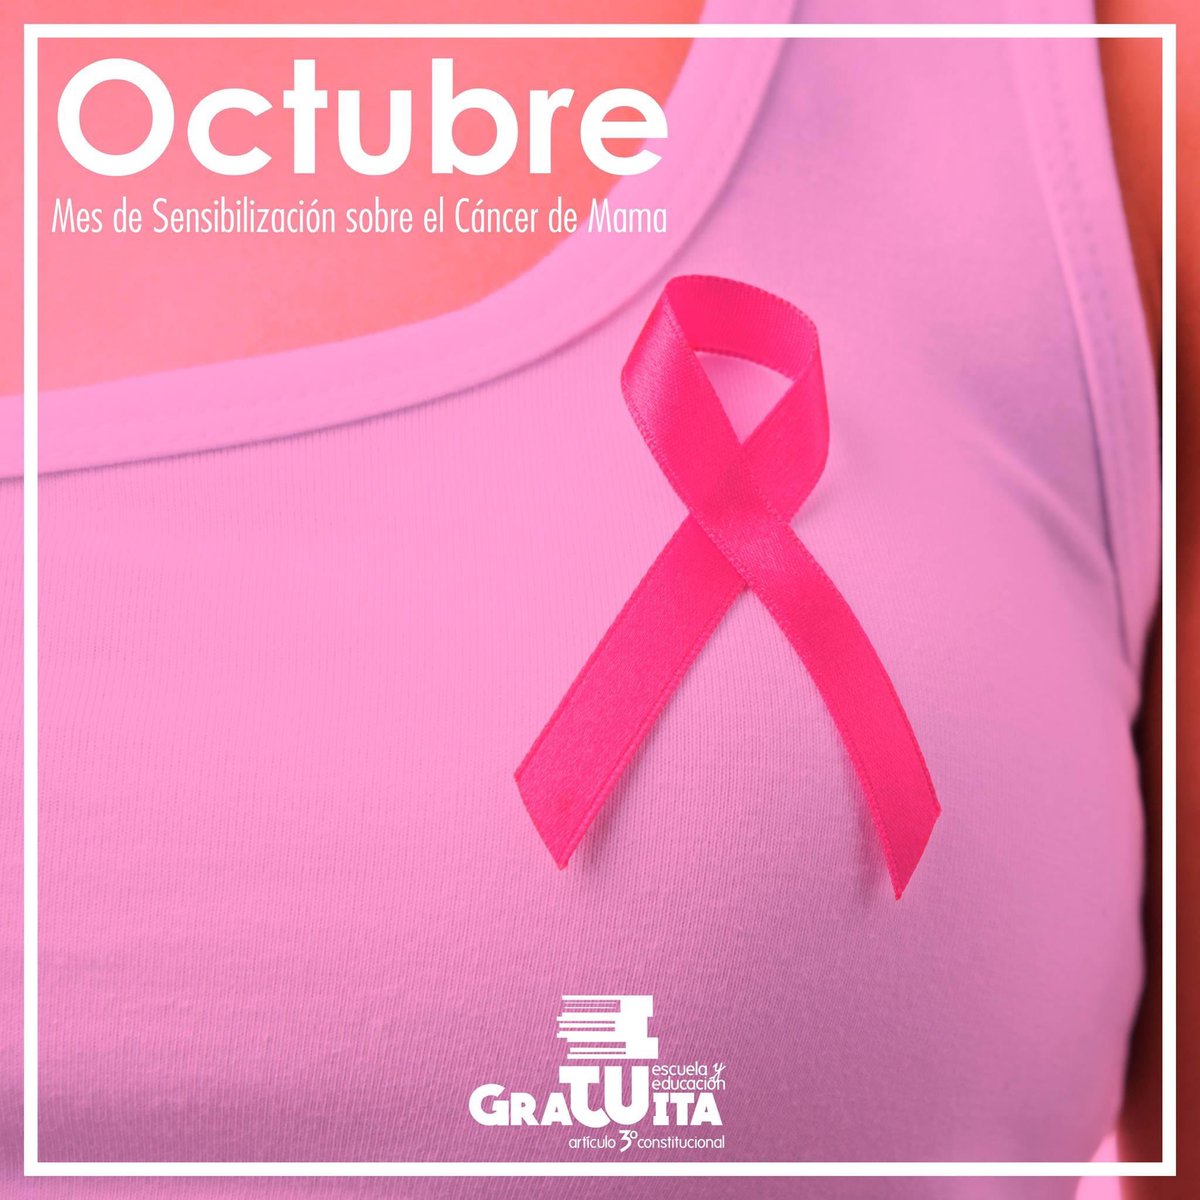 #Unete
A las acciones de Concientización sobre el #cancerDeMama, la detección temprana puede hacer la diferencia: #TocateParaQueNoTeToque 
#OctubreRosa #SNTEunoAuno #SNTEConEllas #SNTEContigo
#Domingo @SnteNacional @Seguidores